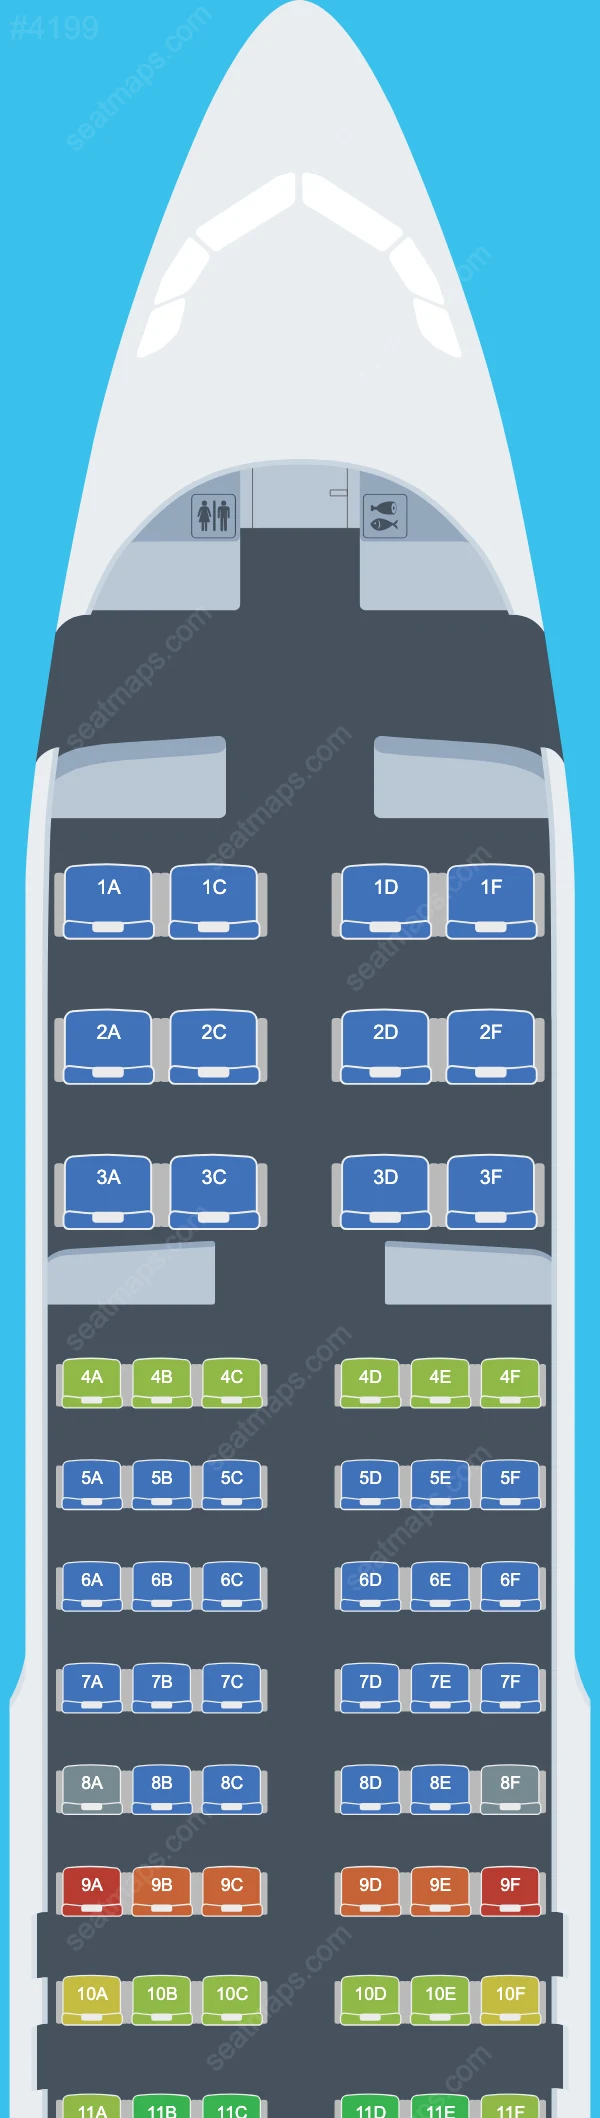 Batik Air Airbus A320 Seat Maps A320-200